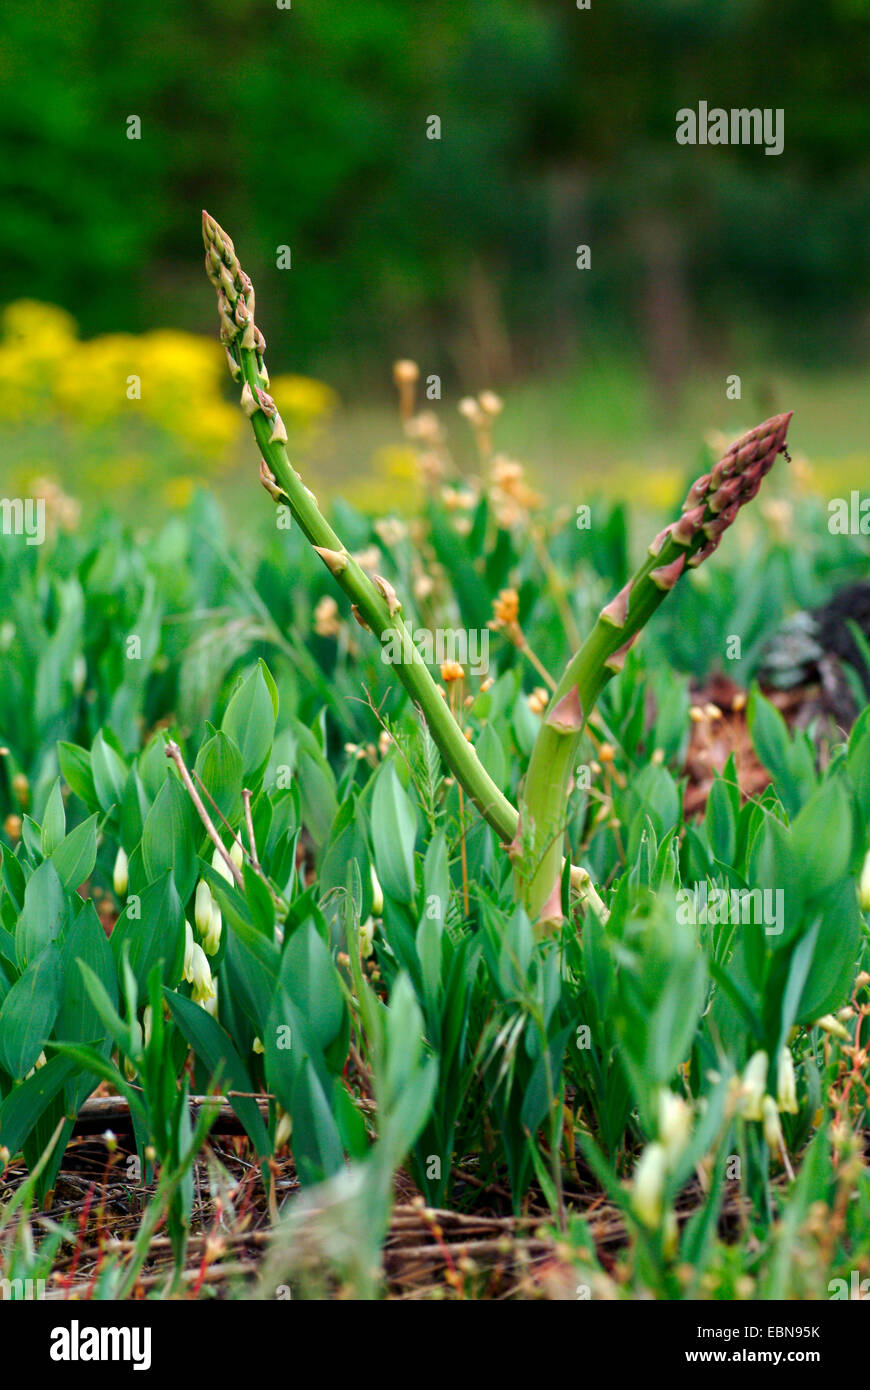 Jardín de espárragos, Sparrow Gras, espárragos trigueros (Asparagus officinalis), el joven grita, Alemania Foto de stock